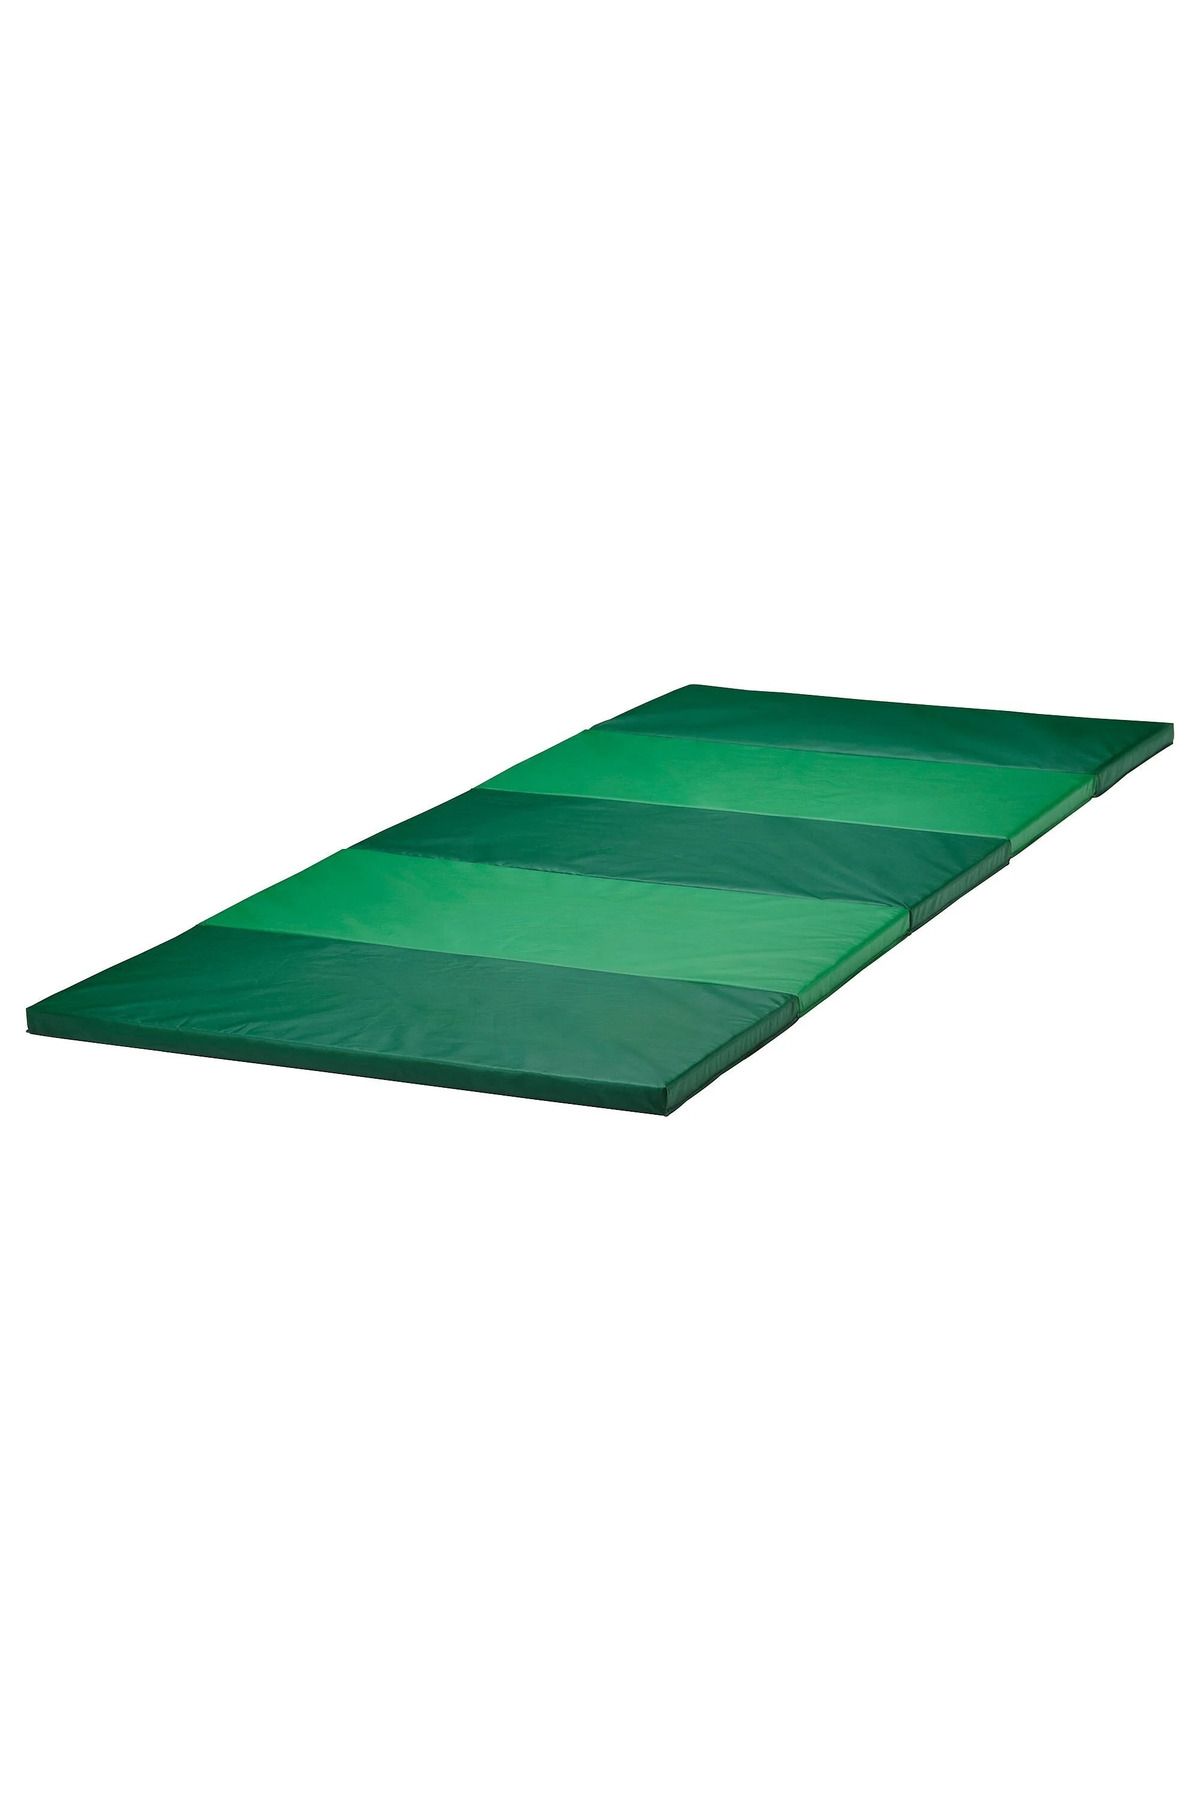 IKEA PLUFSIG Yeşil Katlanır Jimnastik Minderi, 78x185 cm